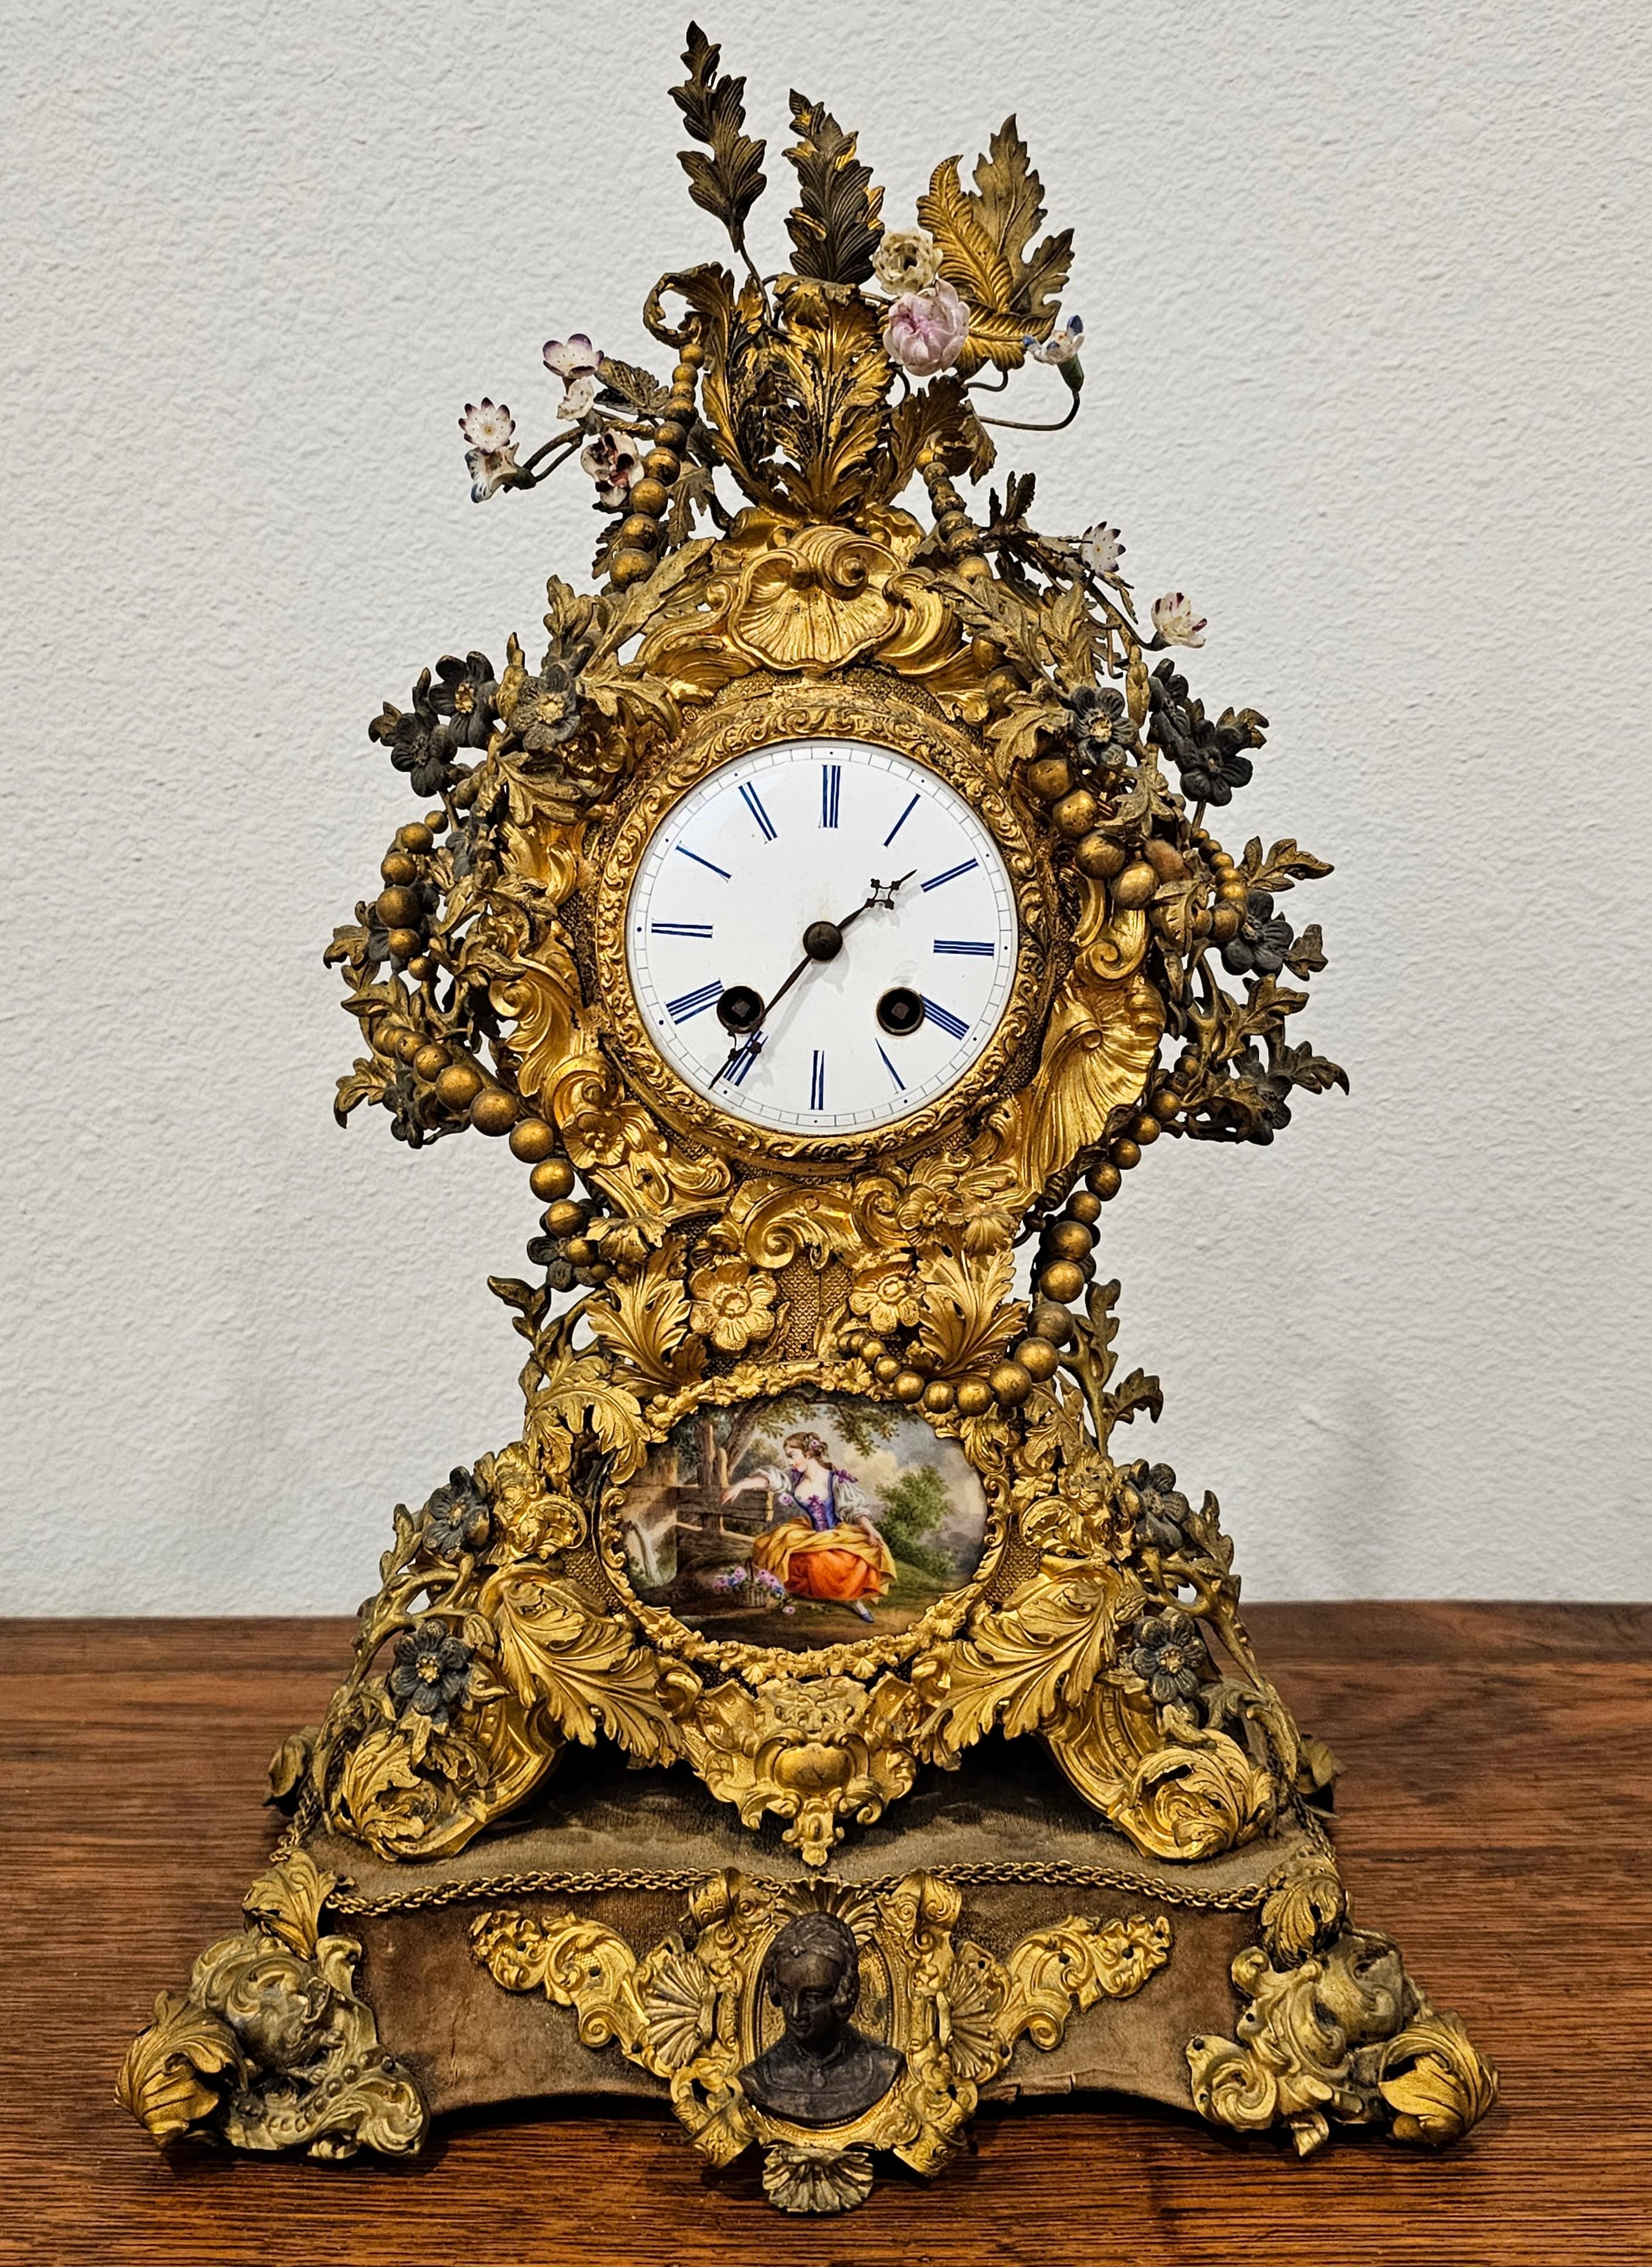 Eine atemberaubende antike französische Belle Époque Periode (1871-1914) Porzellan montiert gemischten Metall Kaminsims Uhr.

In Frankreich Ende des 19. / Anfang des 20. Jahrhunderts entstandenes, hochwertiges Pariser Werk, außergewöhnlich